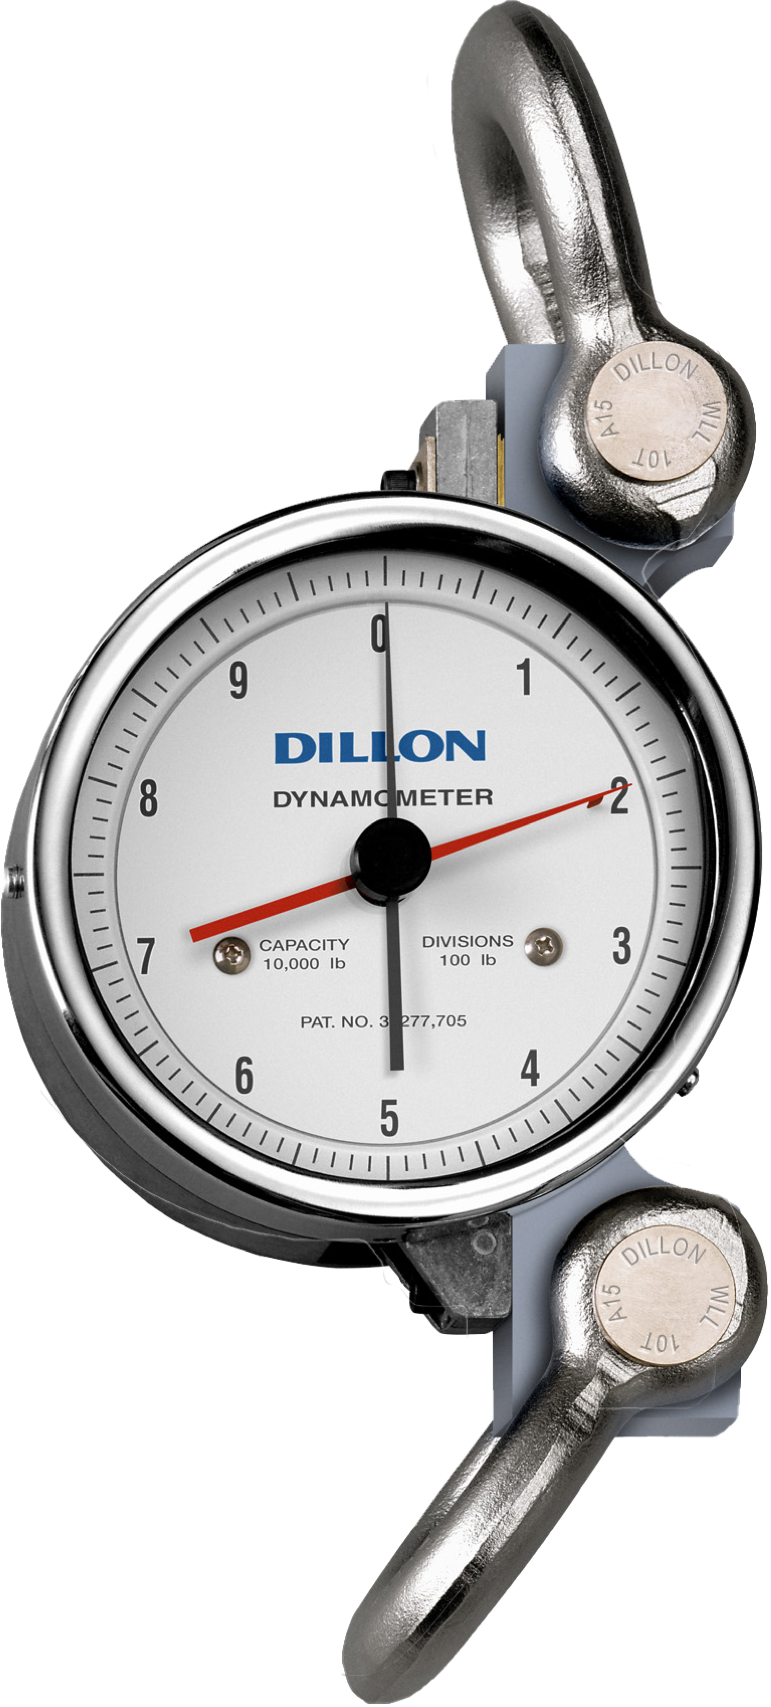 Dillon AP5 Series, 5" Dial Dynamometer Crane Scale